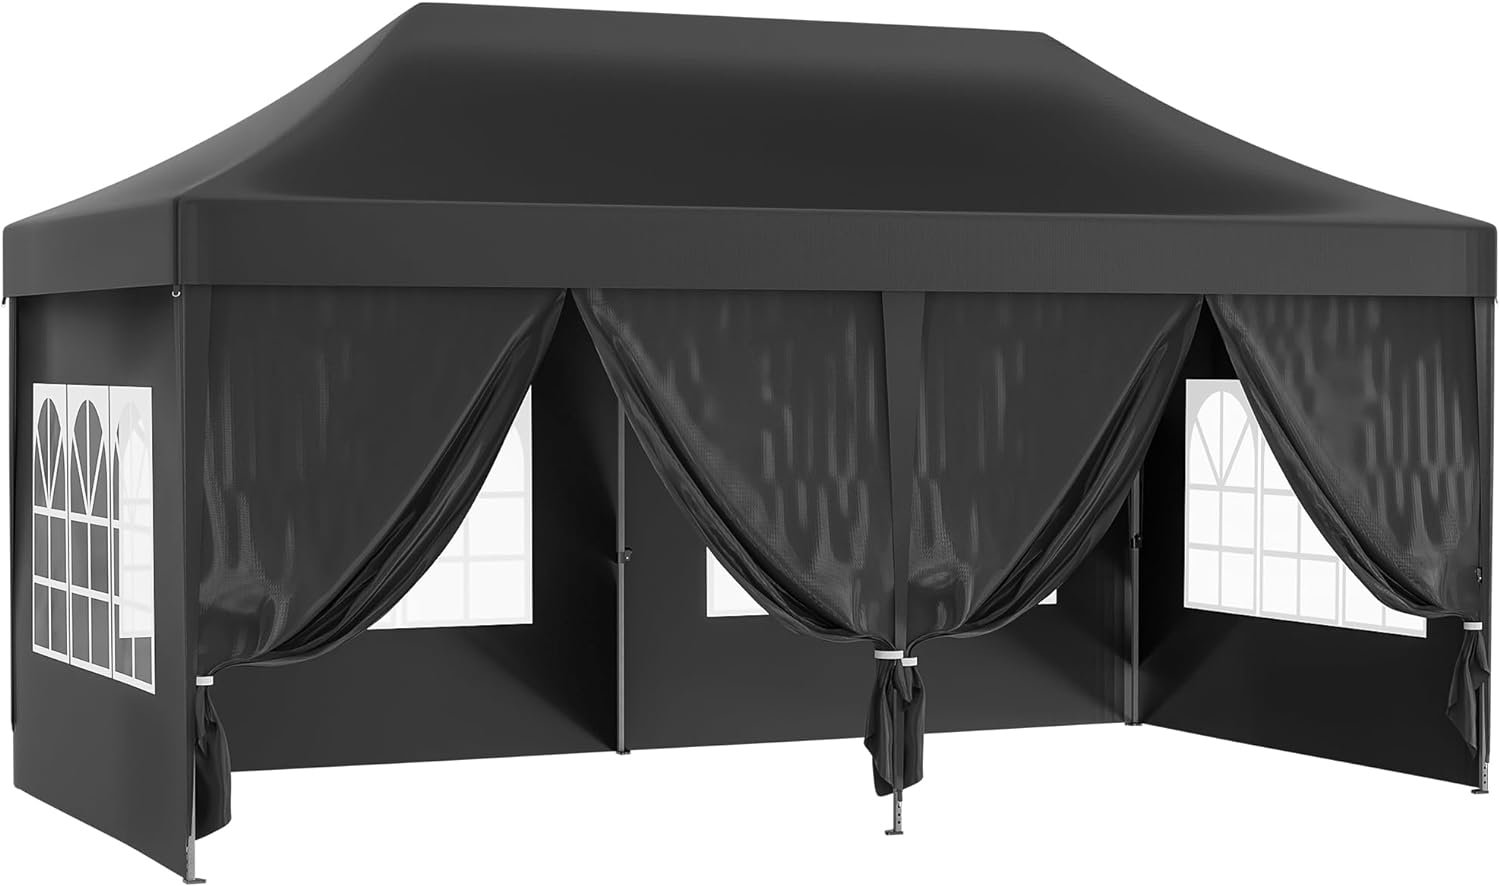 Zahradní nůžkový pavilon 3x6m černý